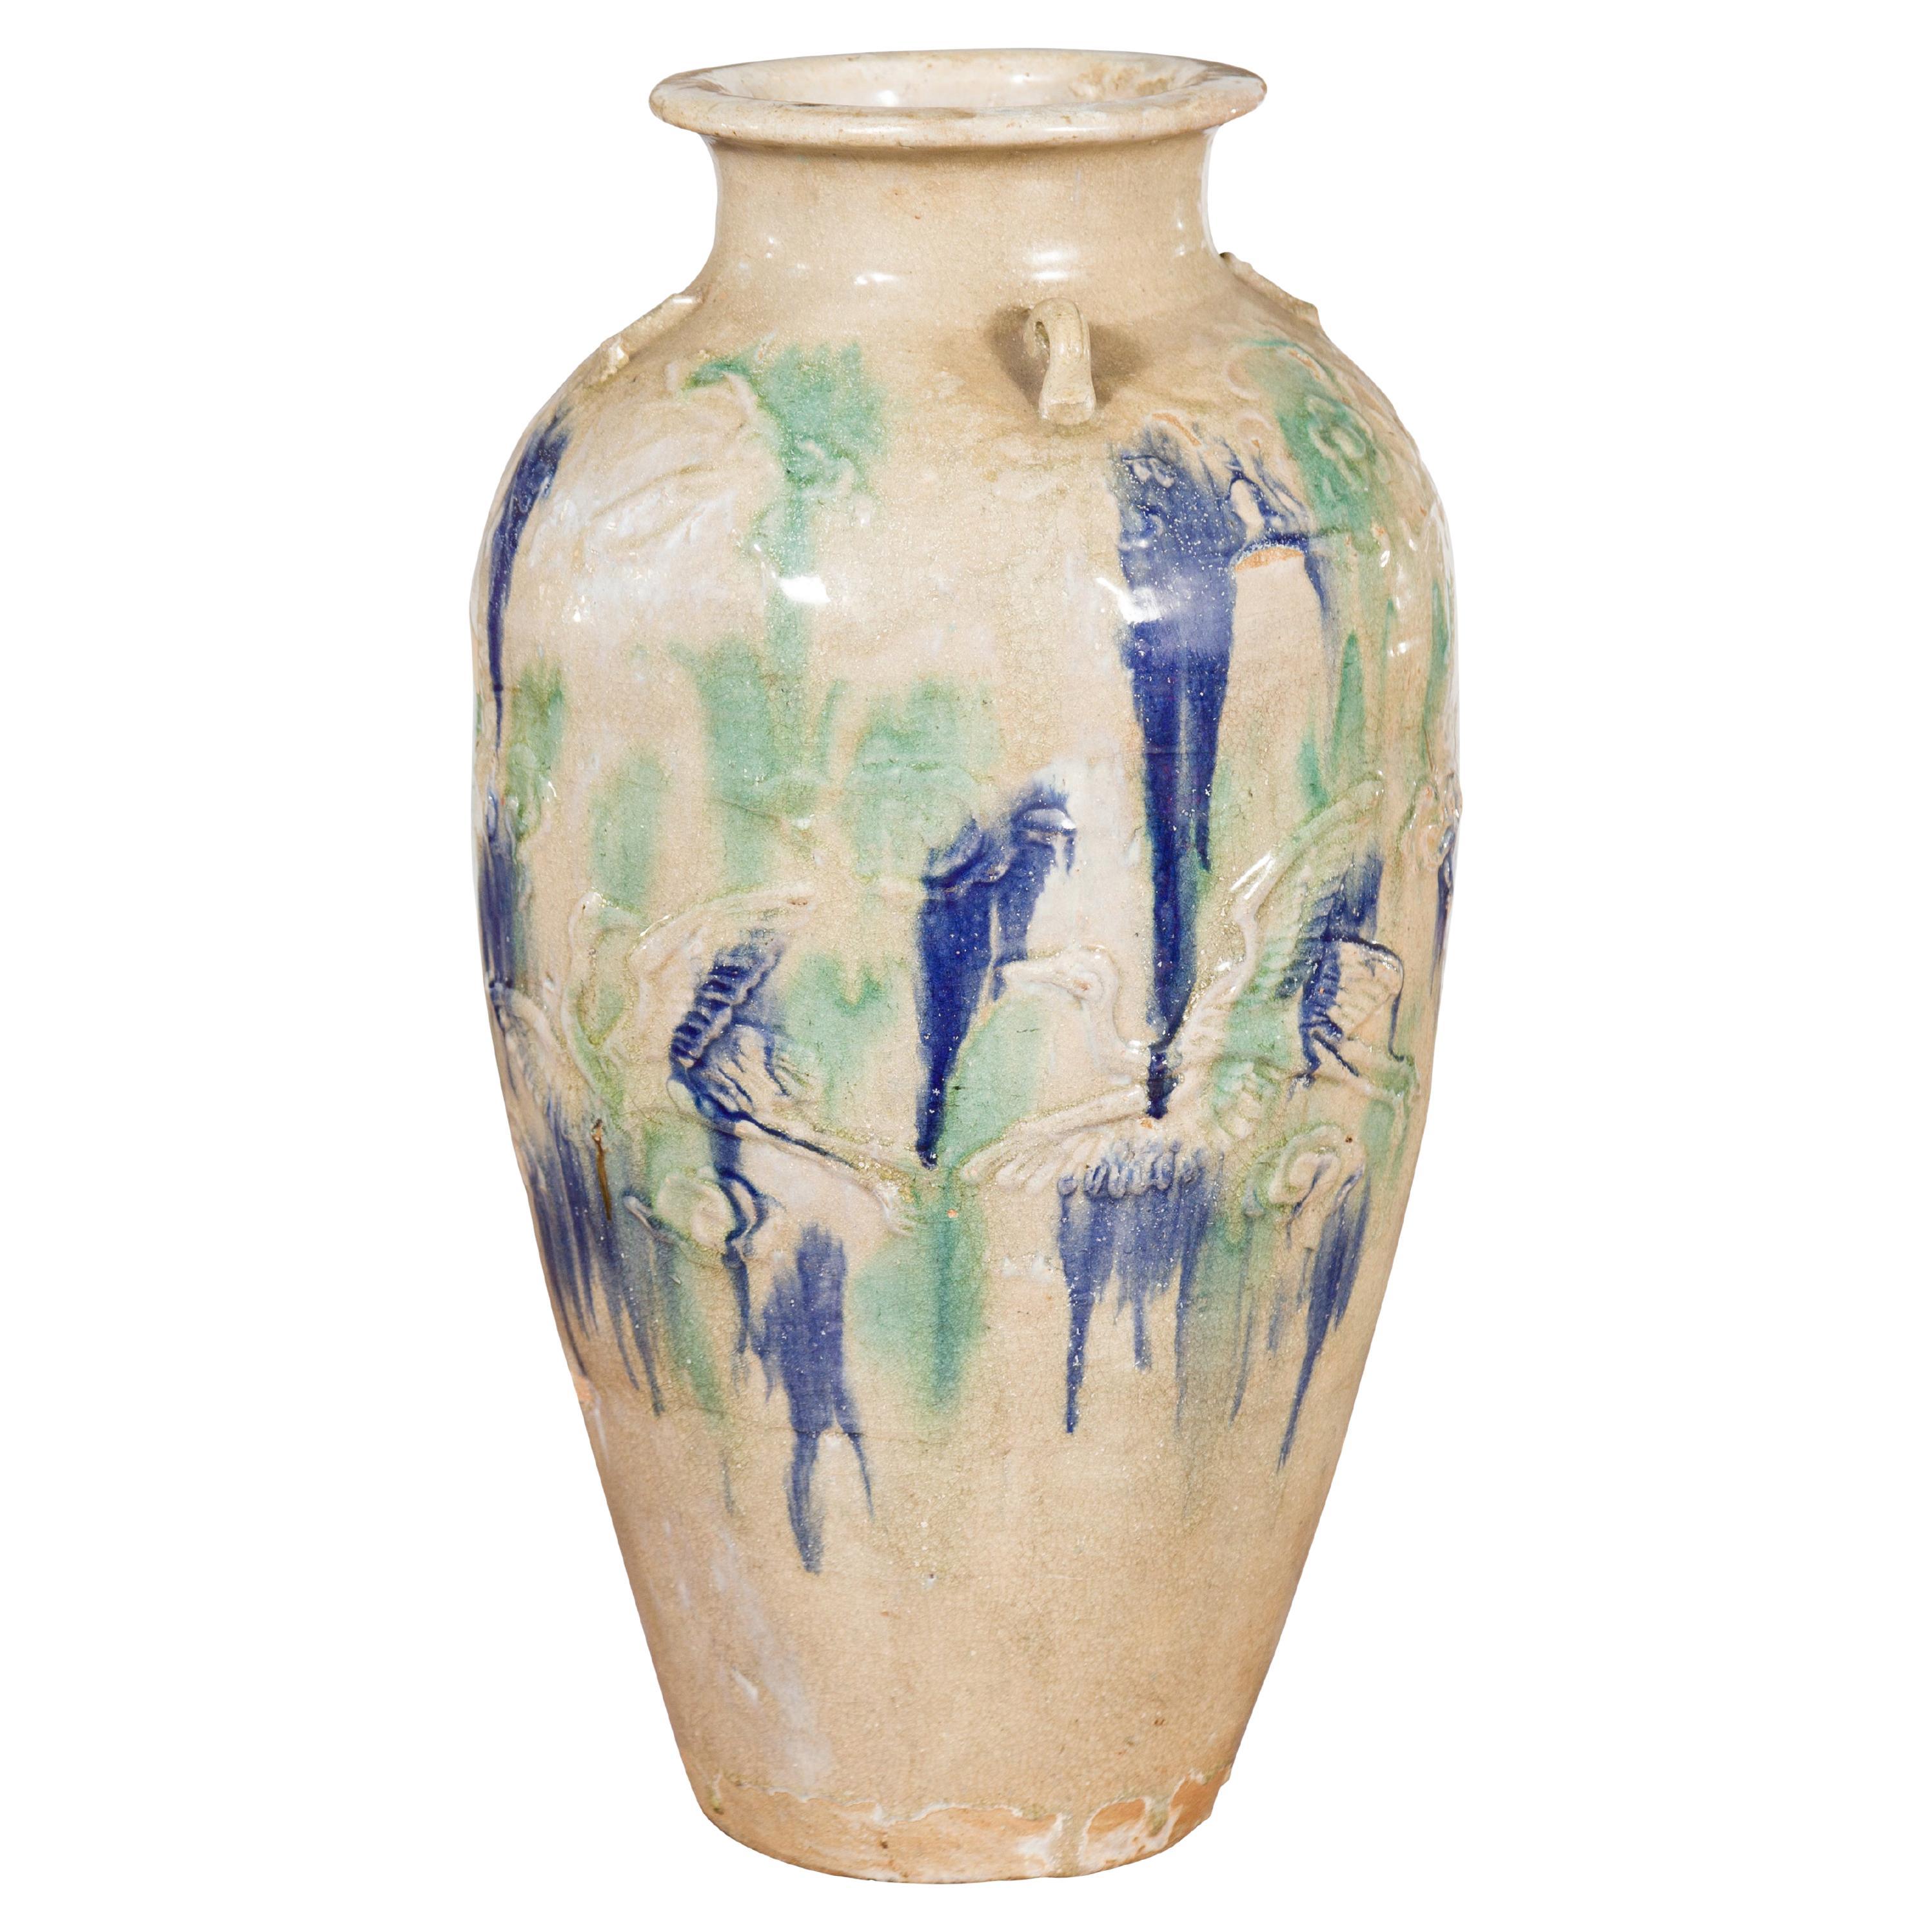 Vase de rangement antique Annamese du 19ème siècle avec effets émaillés verts et bleus